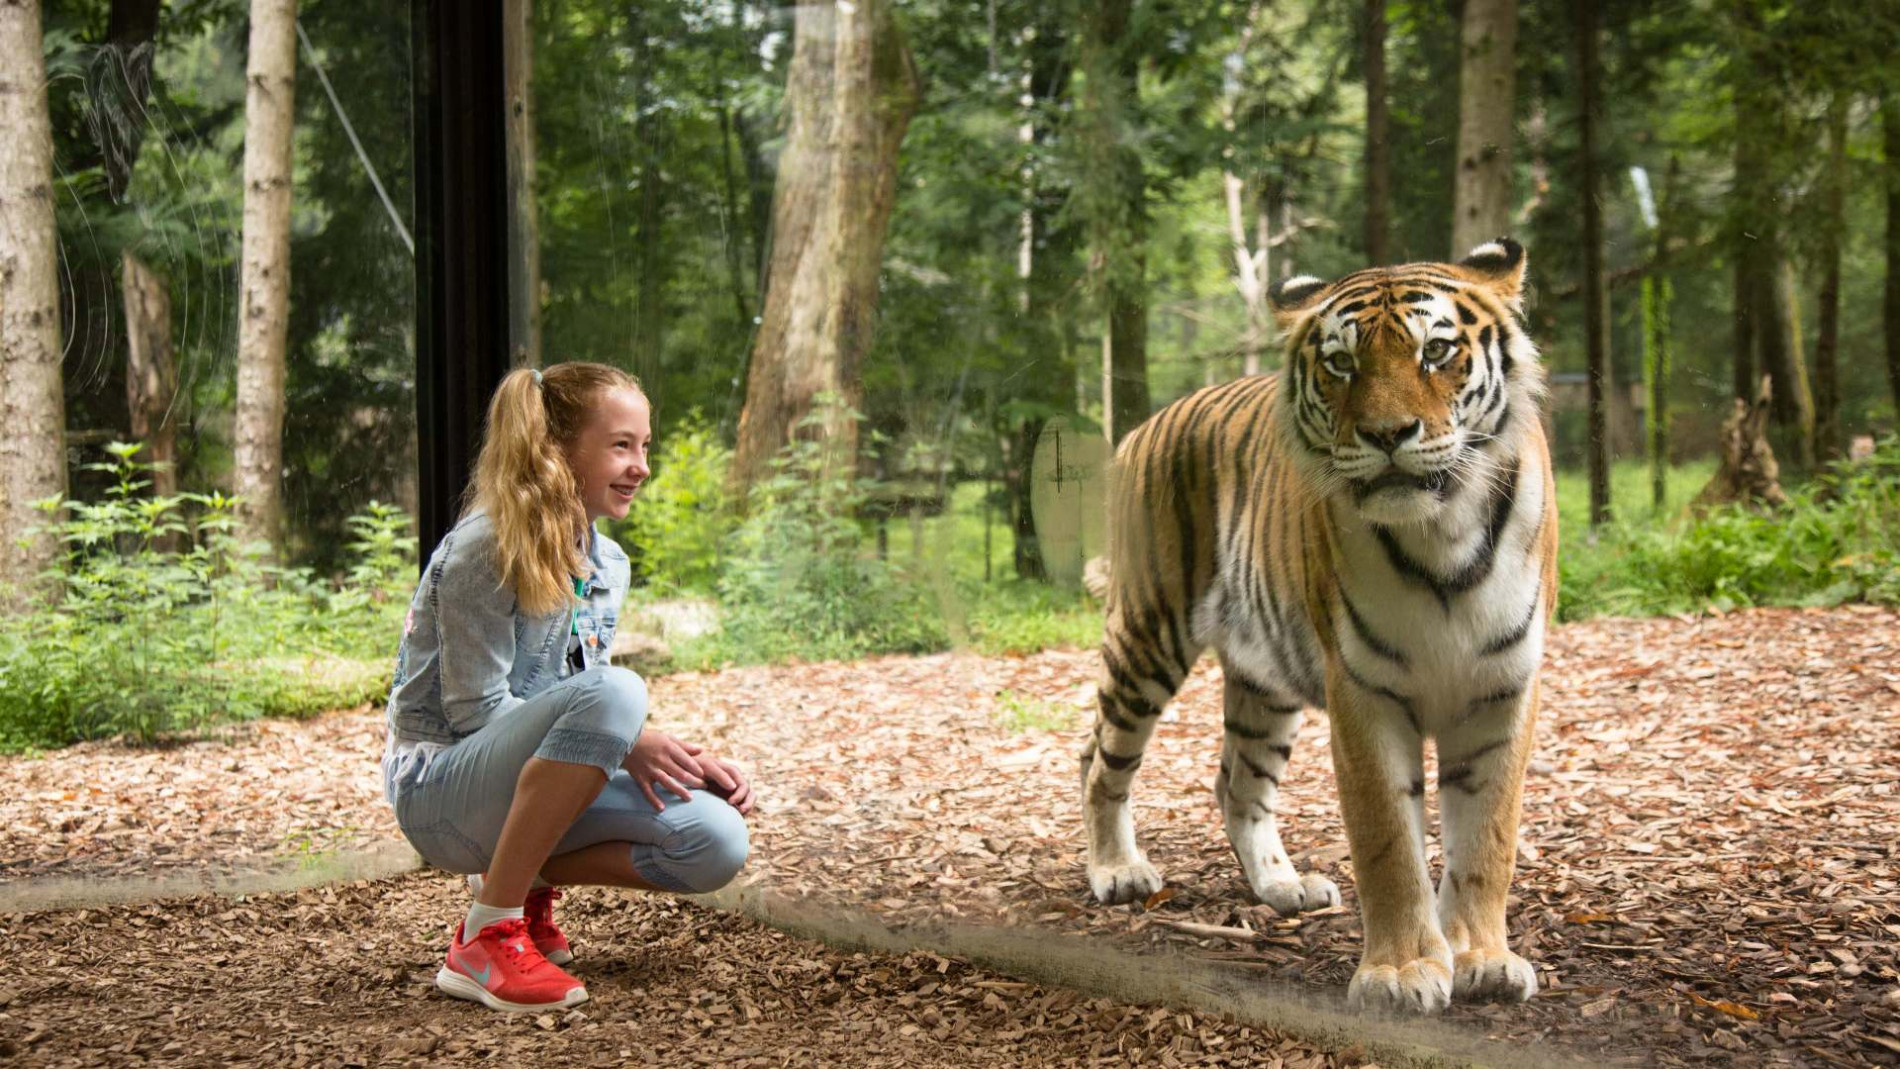 deklica kleči ob tigru, v ozadju gozd